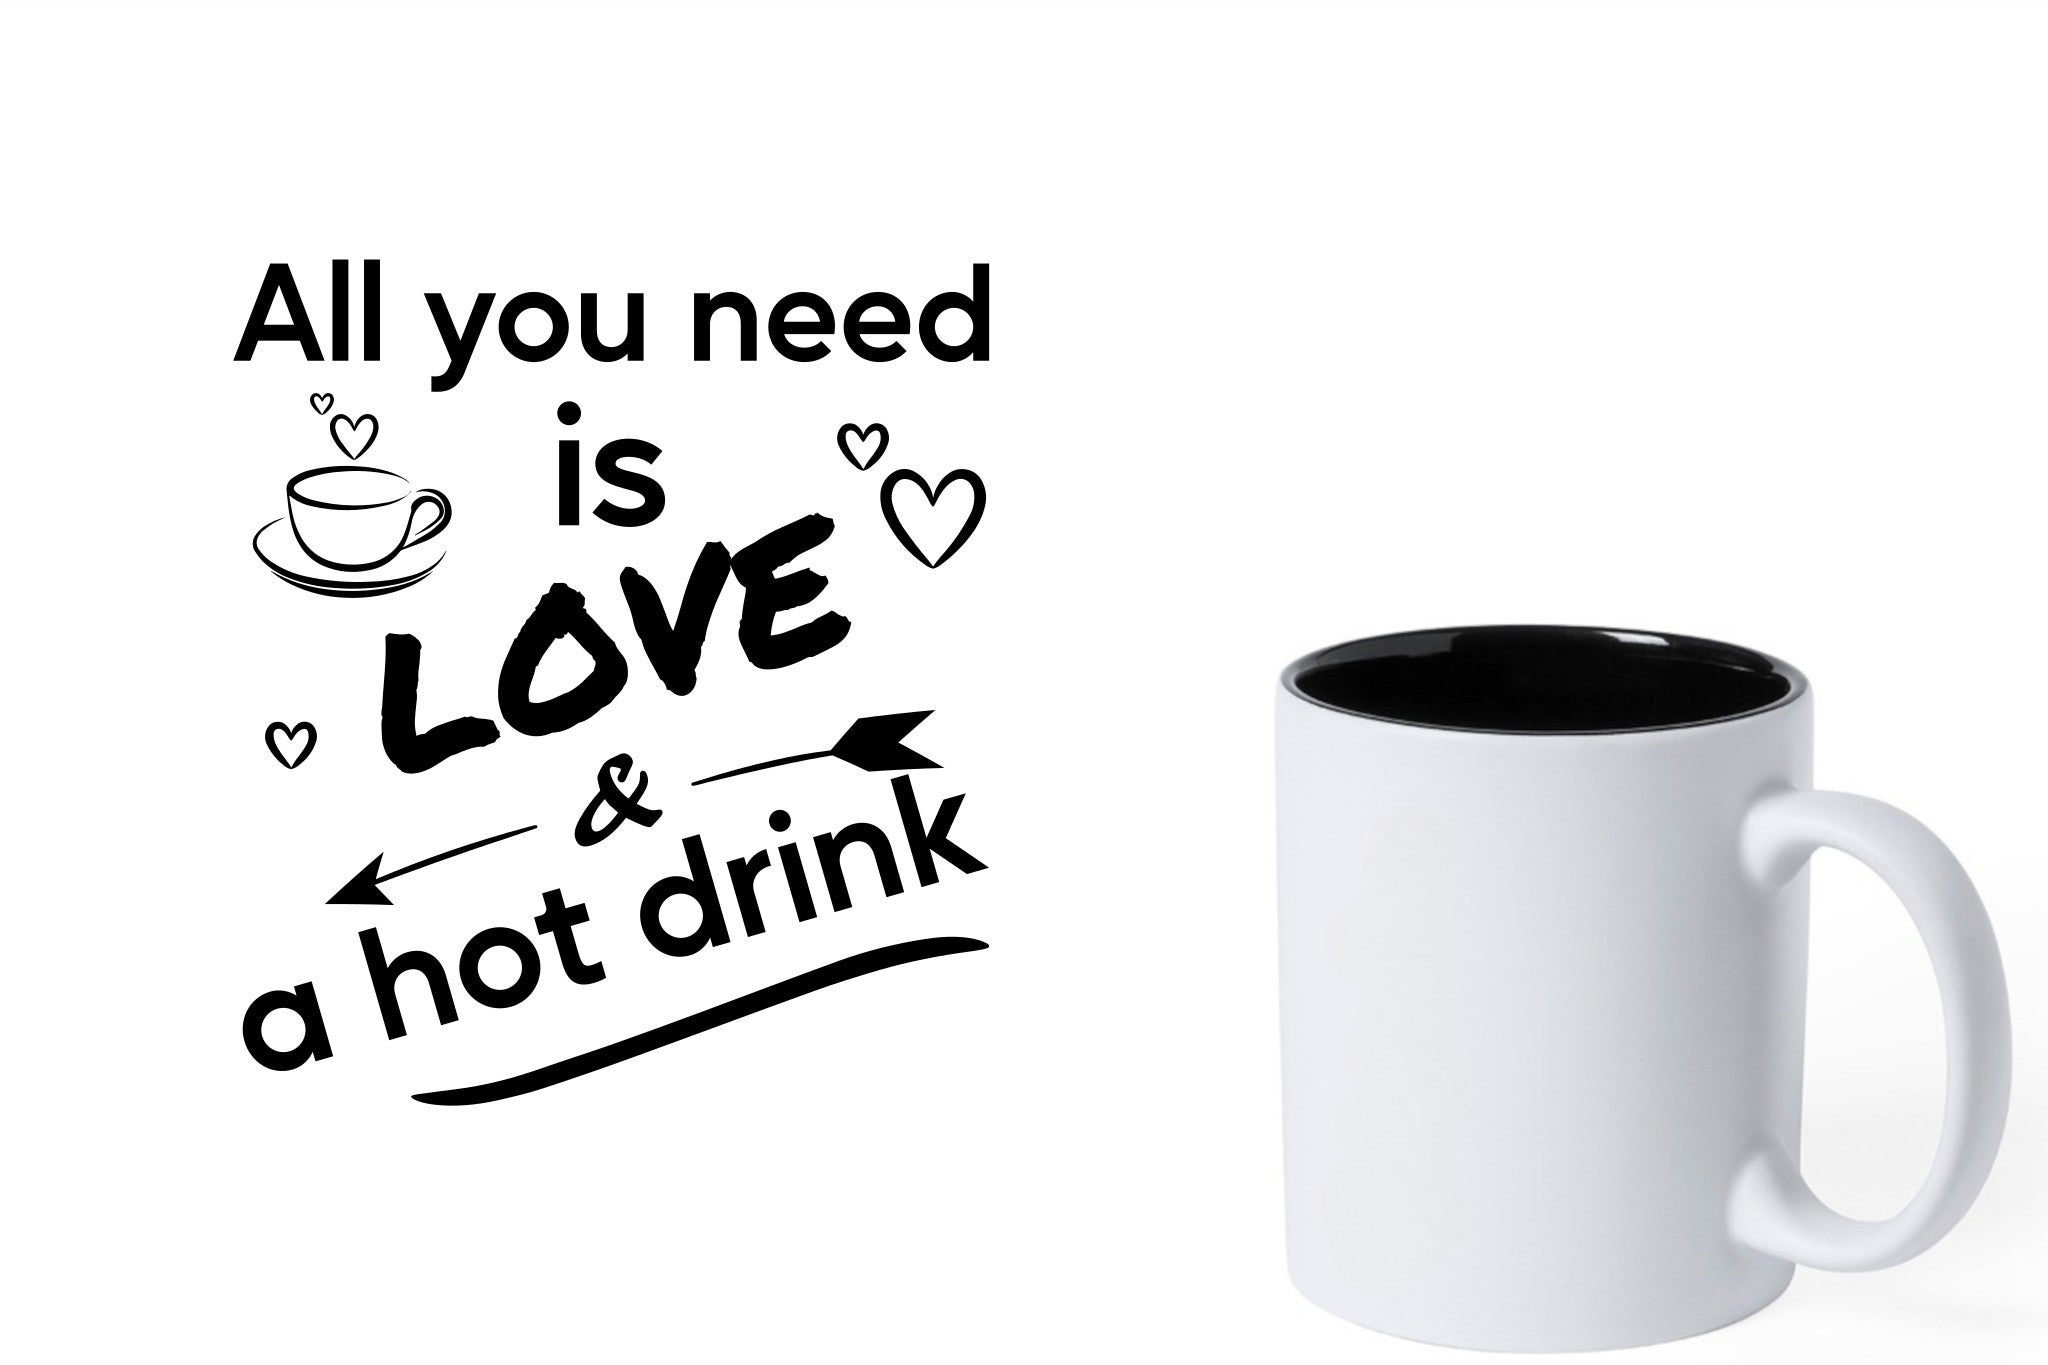 Witte keramische mok met zwarte gravure  'All you need is love & a hot drink'.